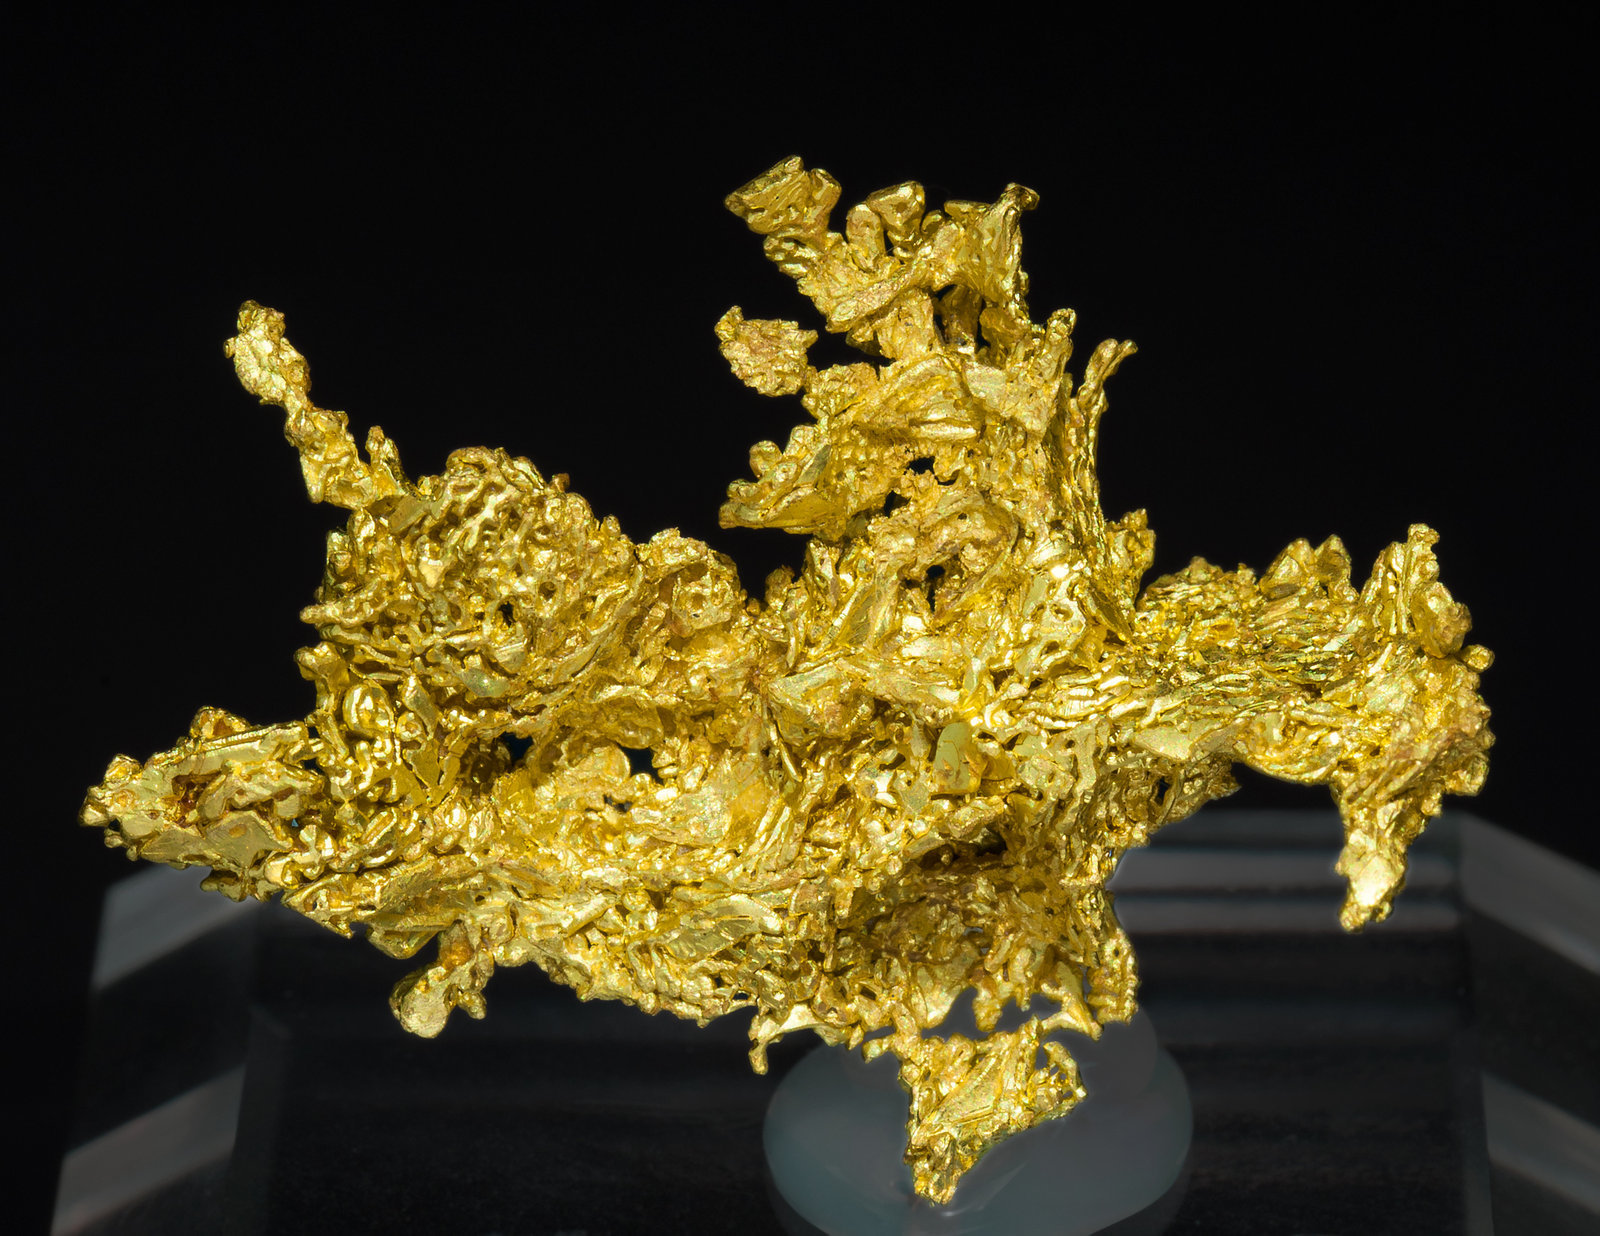 specimens/s_imagesZ3/Gold-TQ46Z3f.jpg